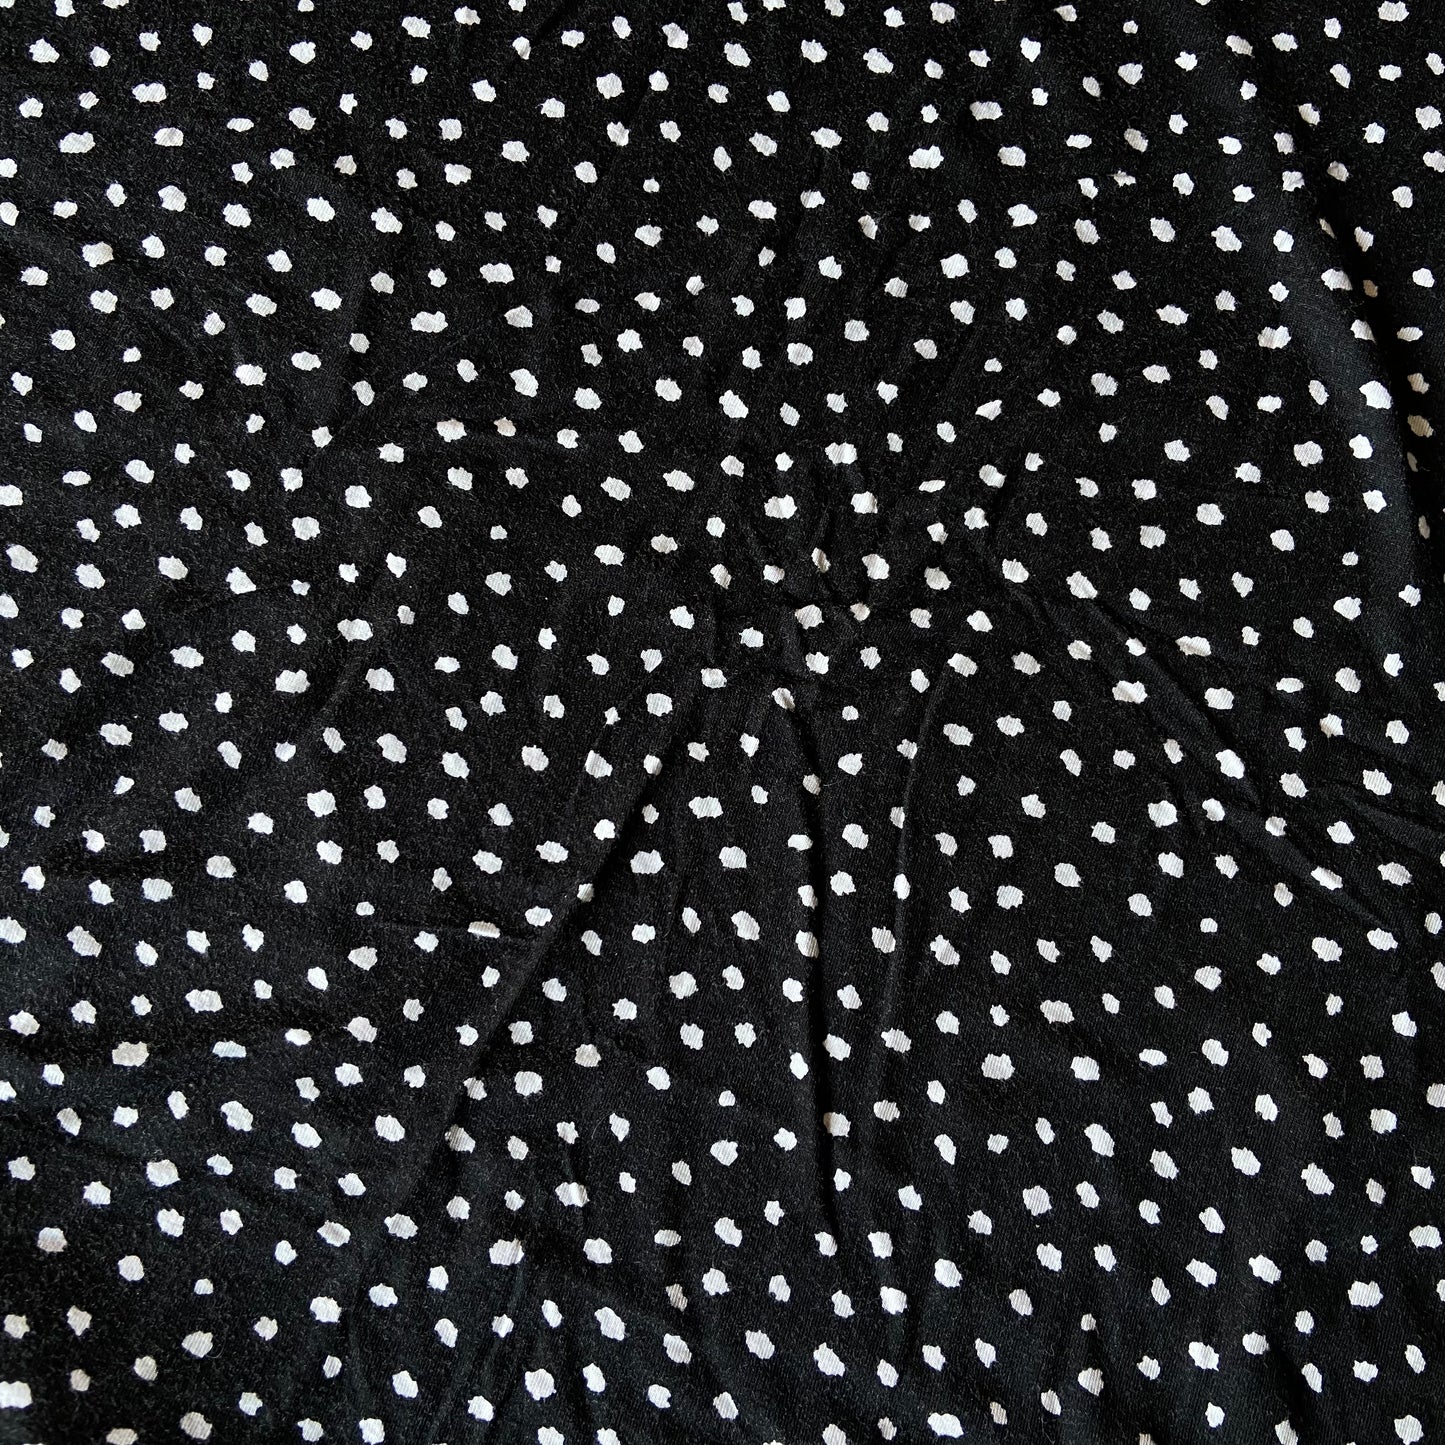 Black Micro Polka Dot